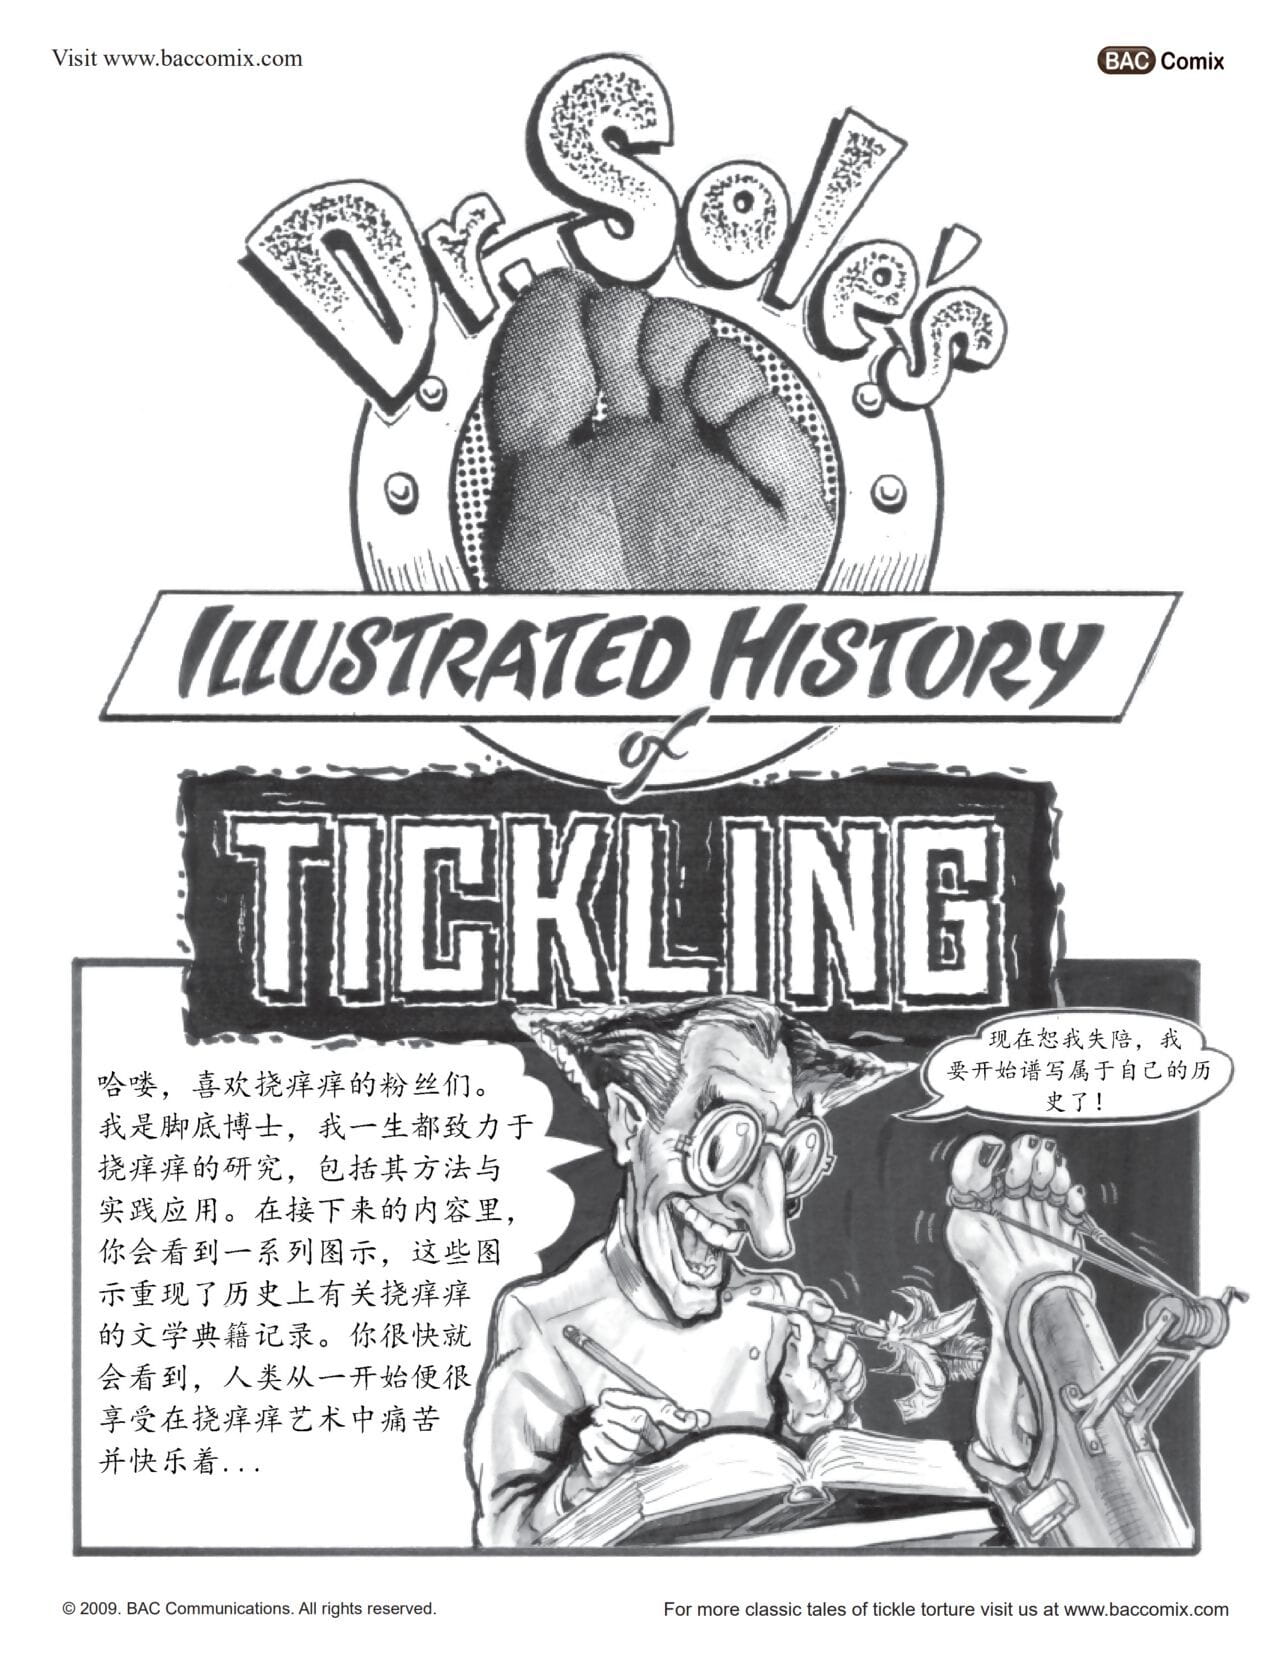 历史 的 tickling（挠痒秘史）【chinese】【凛风孤隼汉化】 page 1